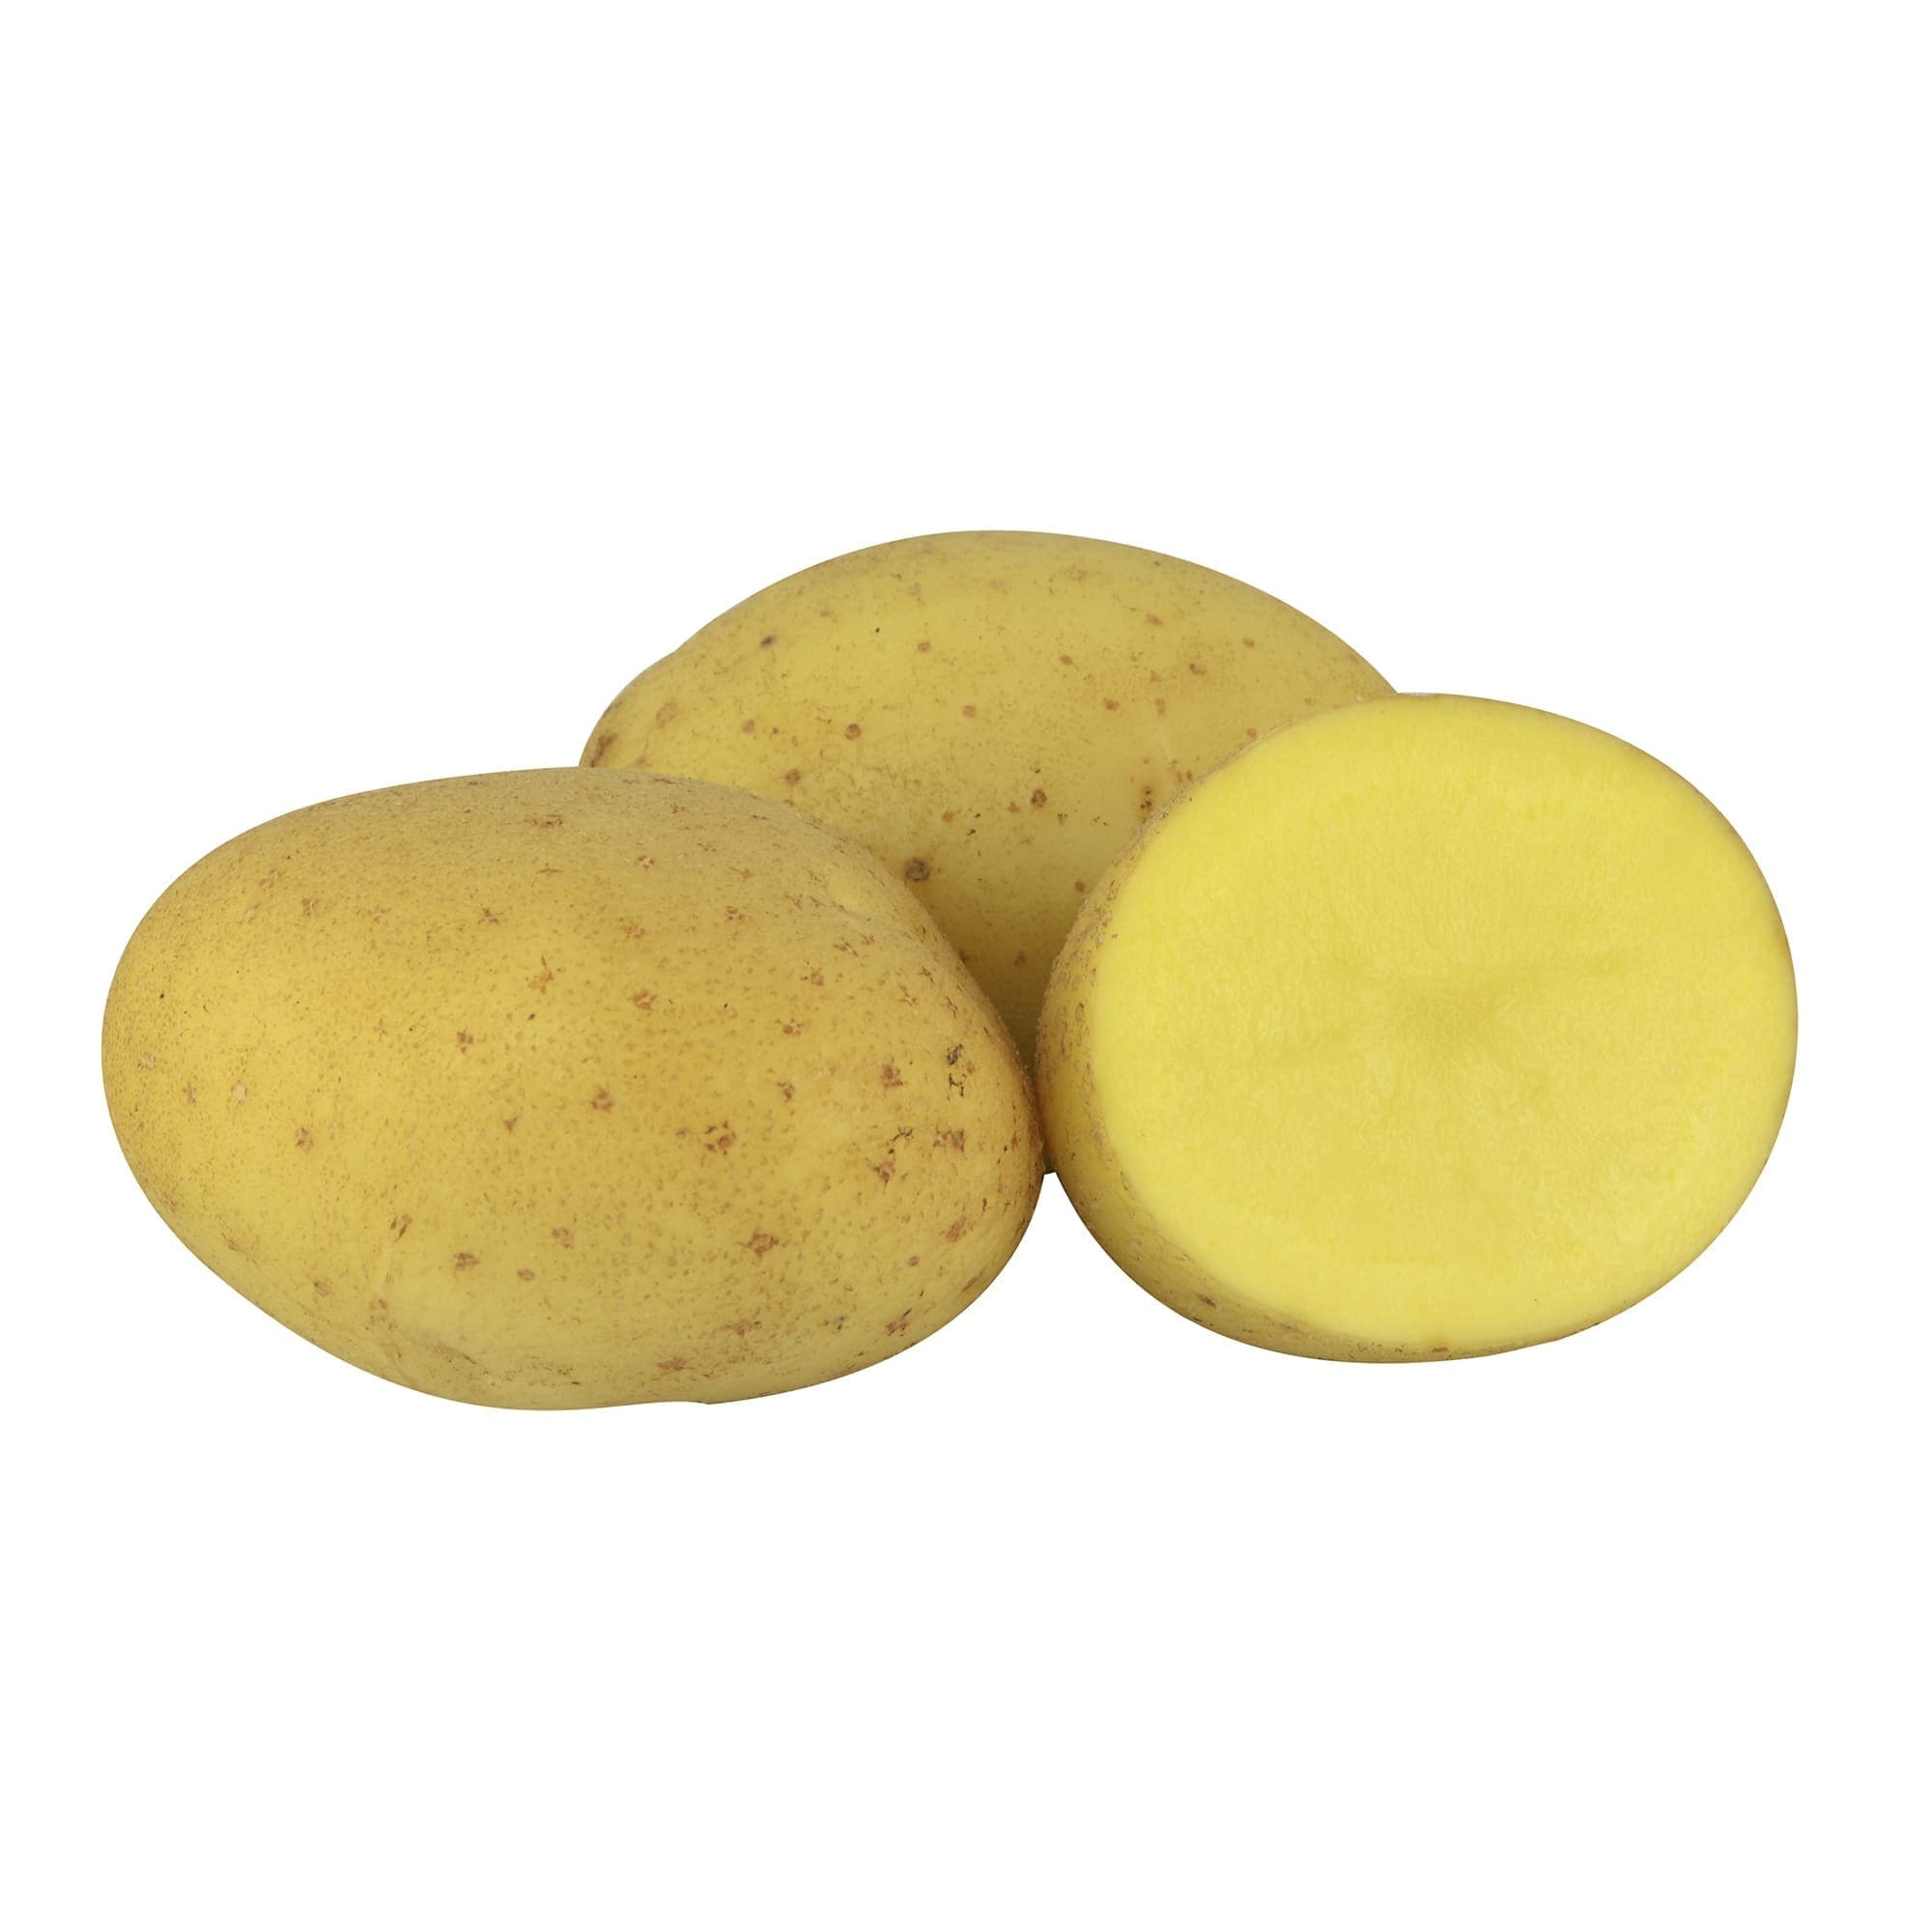 La pomme de terre jaune